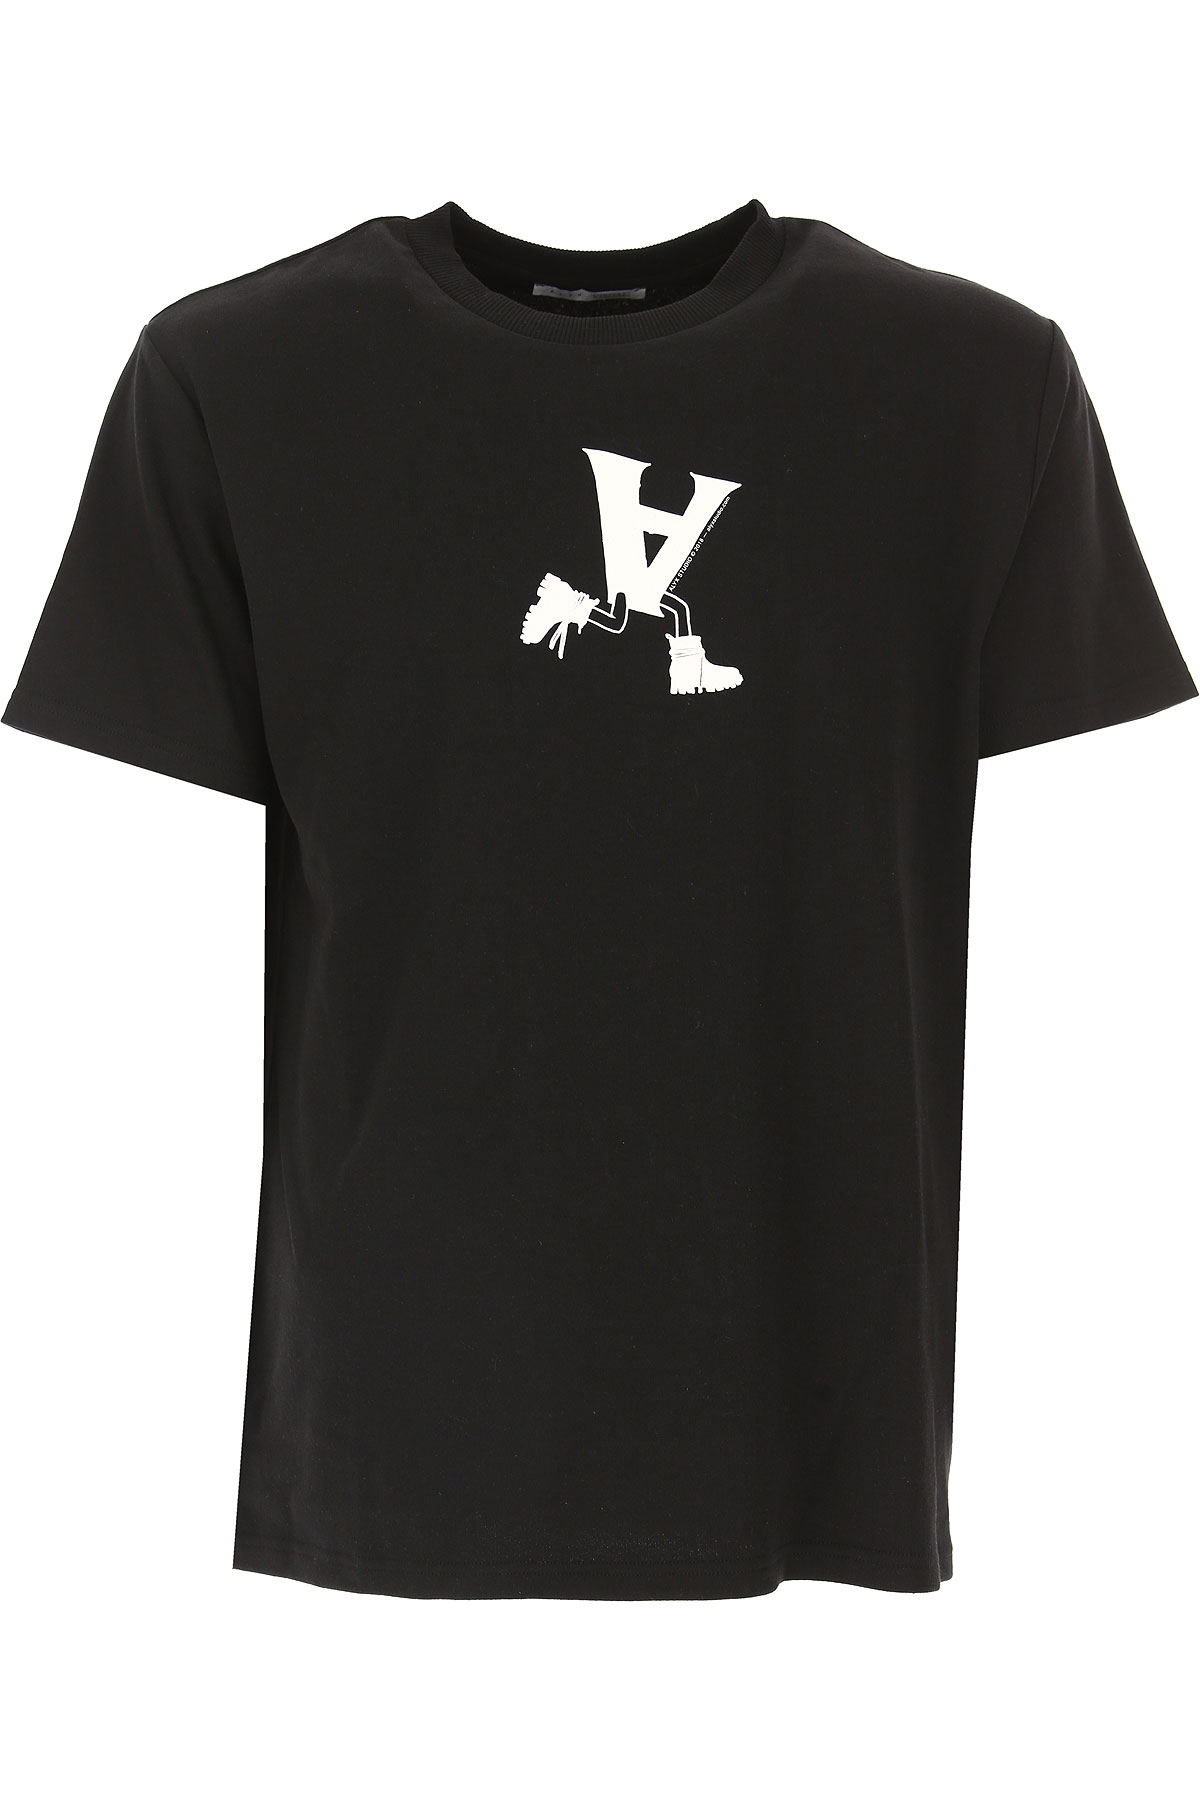 ALYX T-shirt Homme, Noir, Coton, 2017, L M S XL